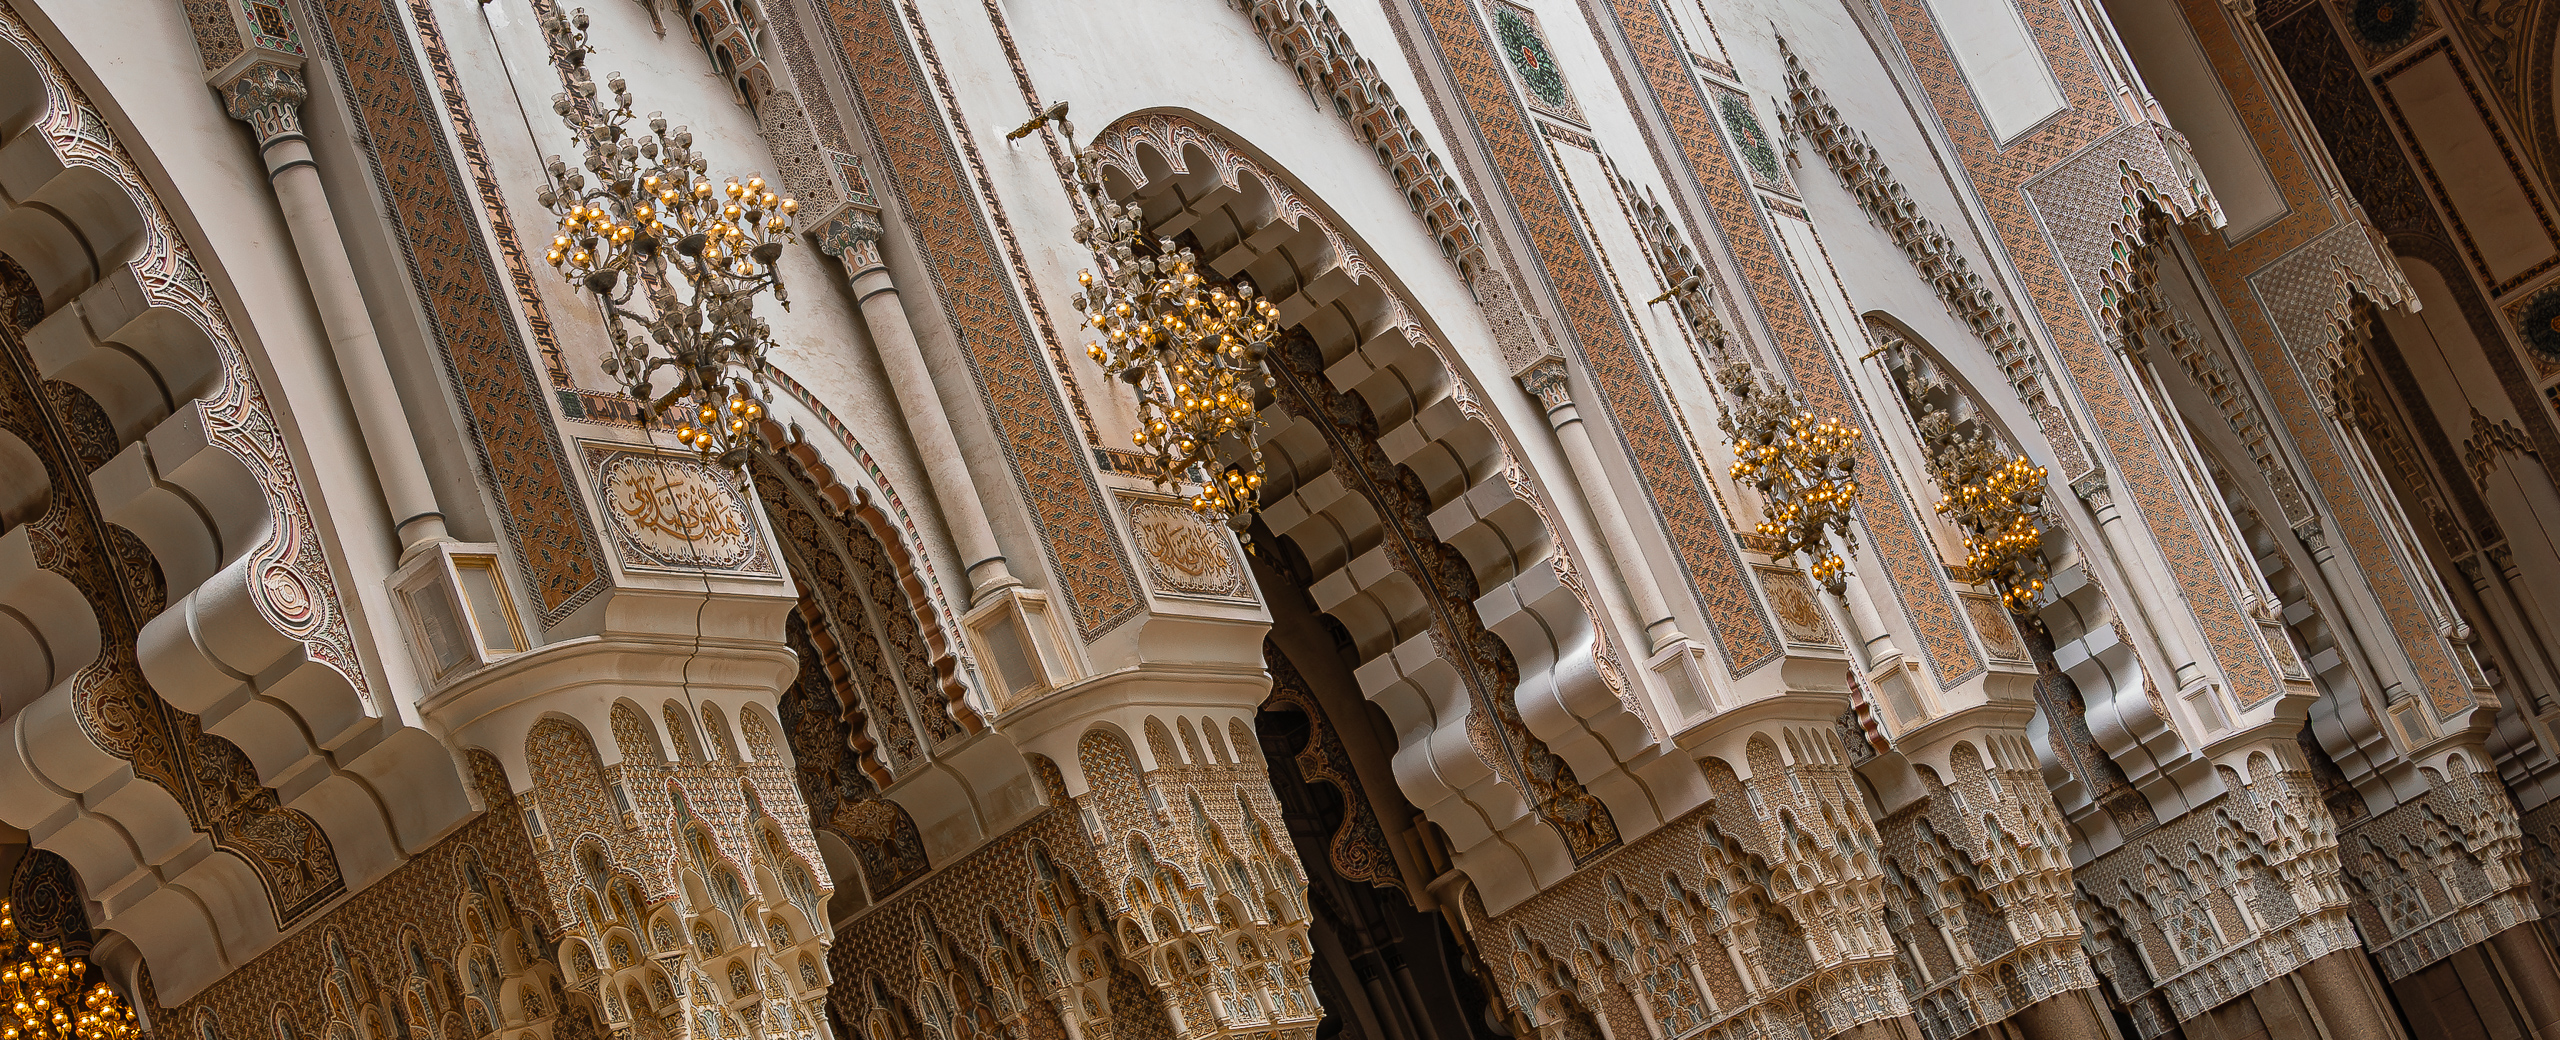 Hassan-II.-Moschee – gelungene Verbindung von islamischer Architektur mit typisch marokkanischen Formen/Farben.